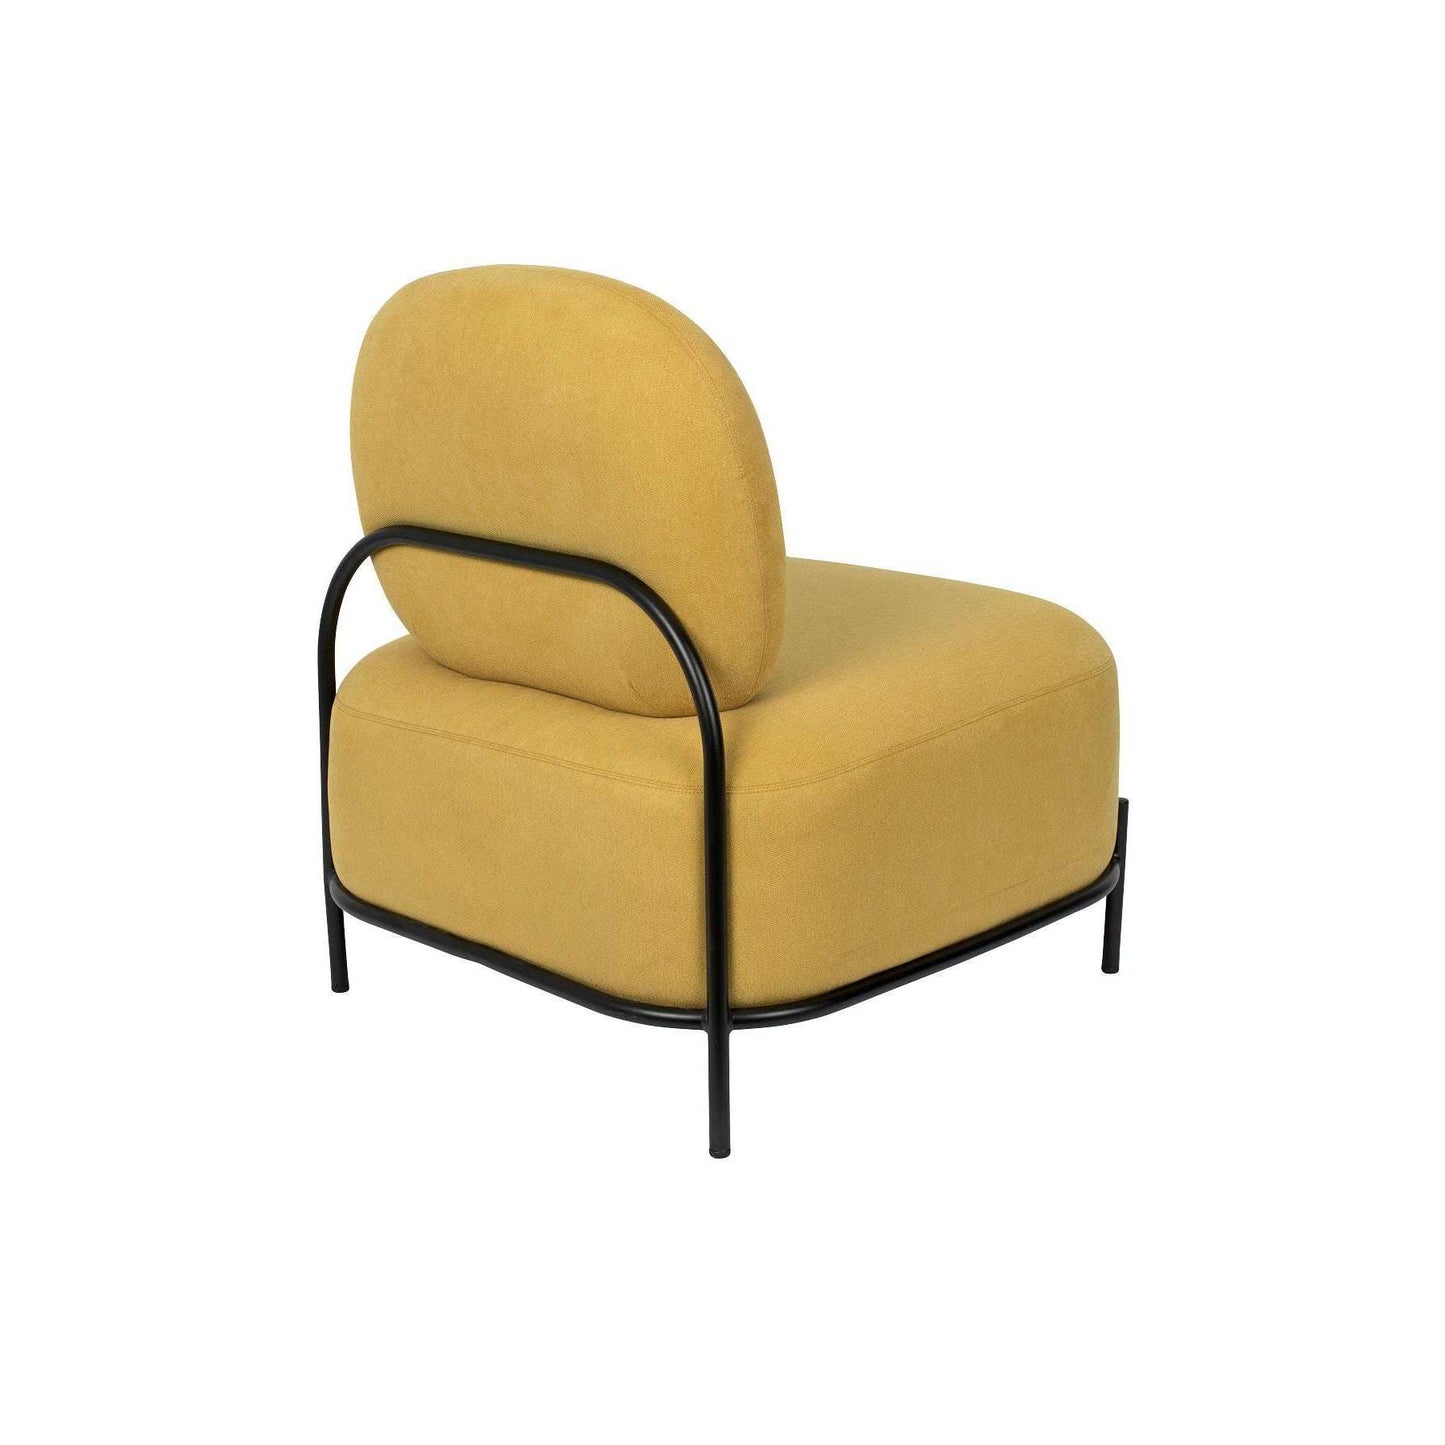 Staerkk fauteuil polly geel 71,5 x 66 x 77 cm